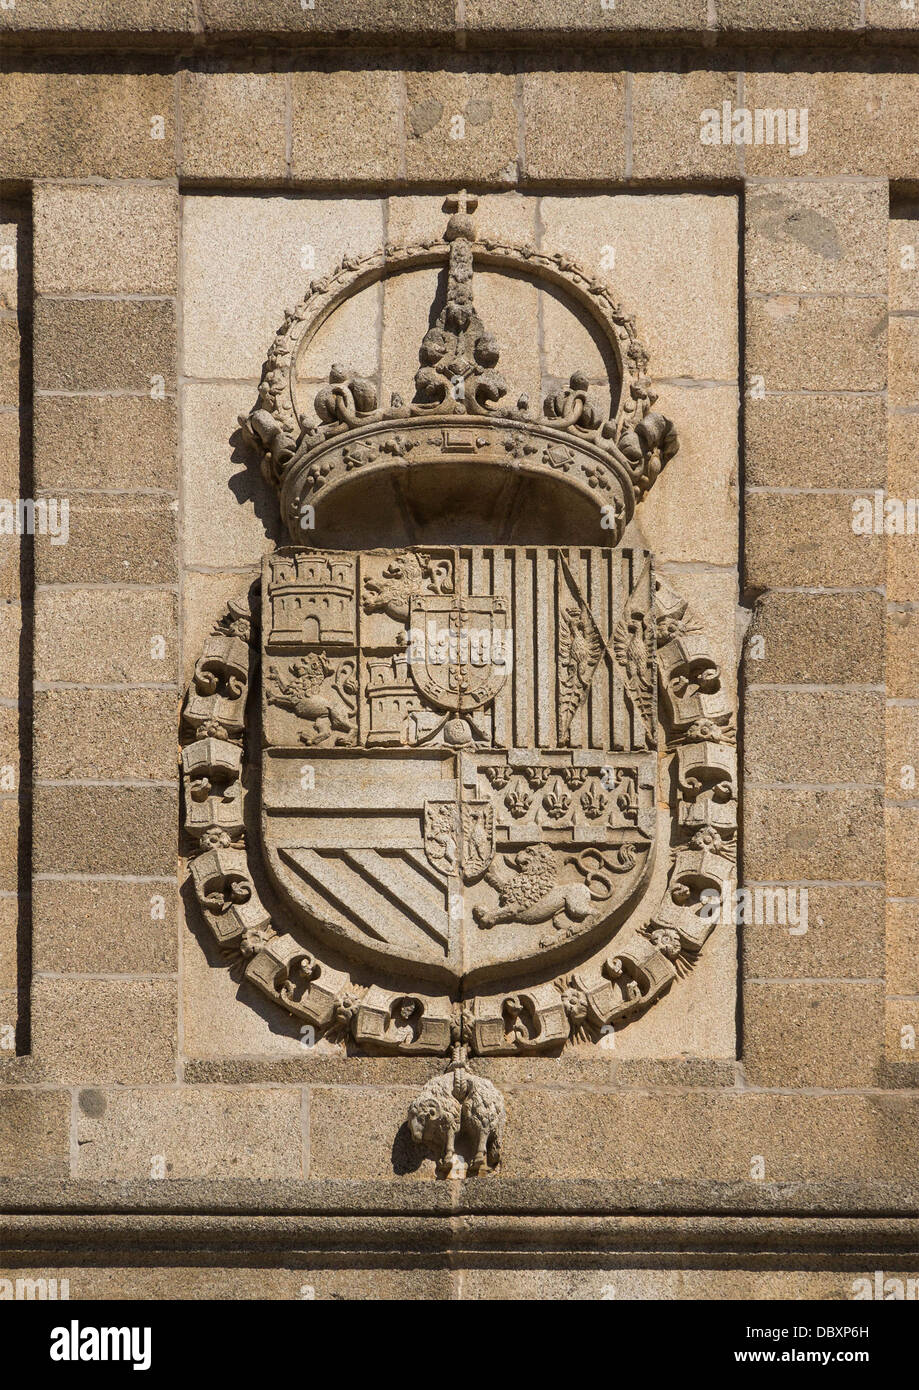 Rilievo del CoA di Filippo II di Spagna, facciata del monastero di San Lorenzo de El Escorial, Spagna. Foto Stock